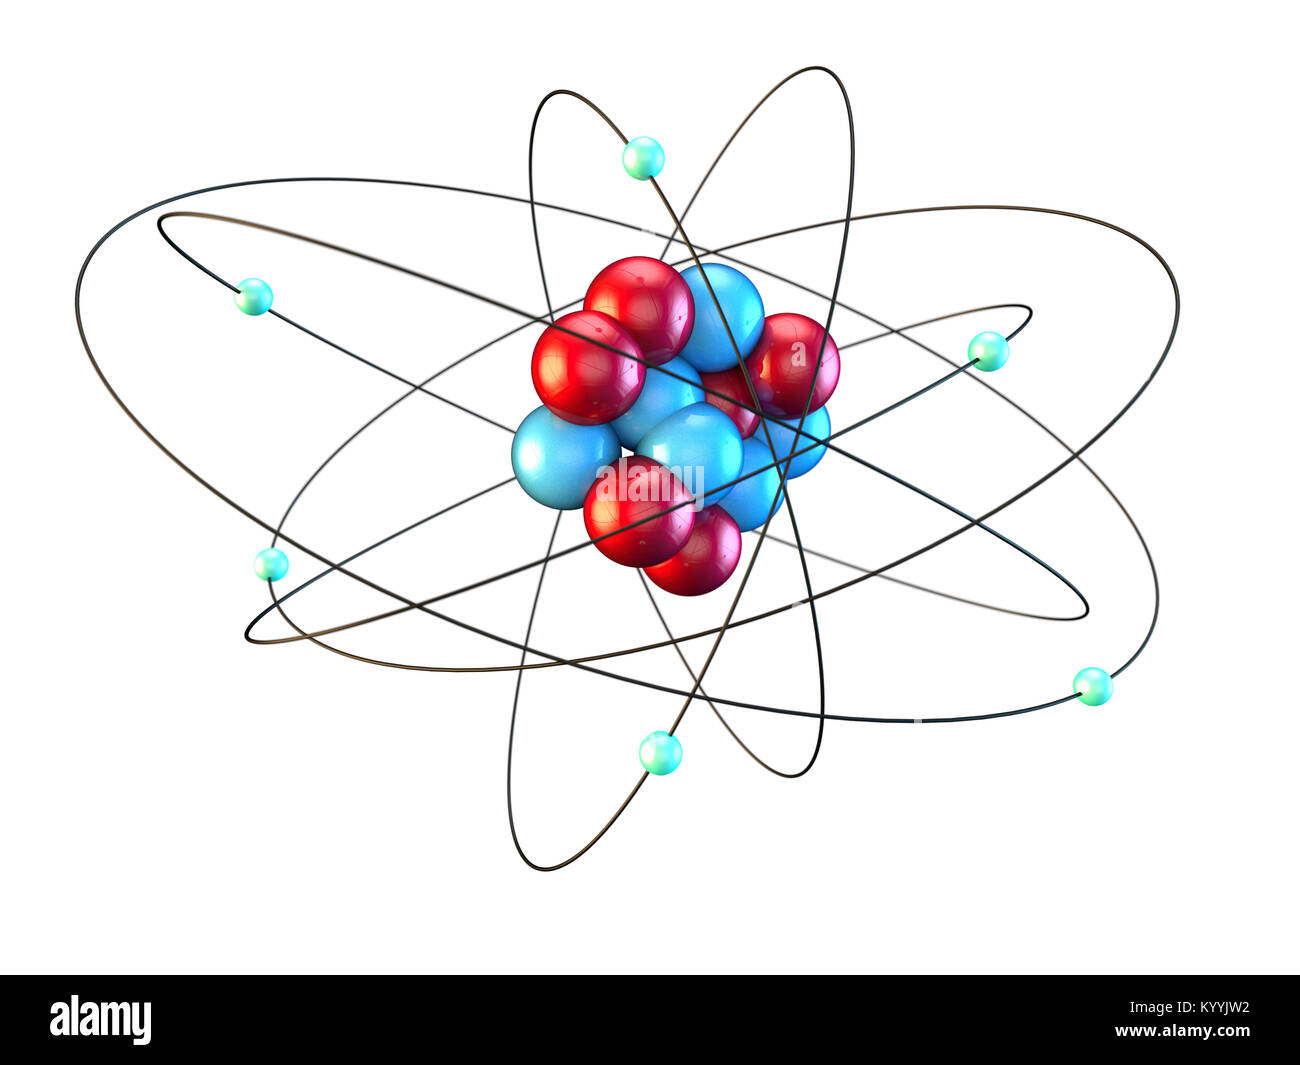 Átomo de carbono mostrando seis electrones orbitando alrededor de 6 protones y 6 neutrones, elemento químico de química Foto de stock